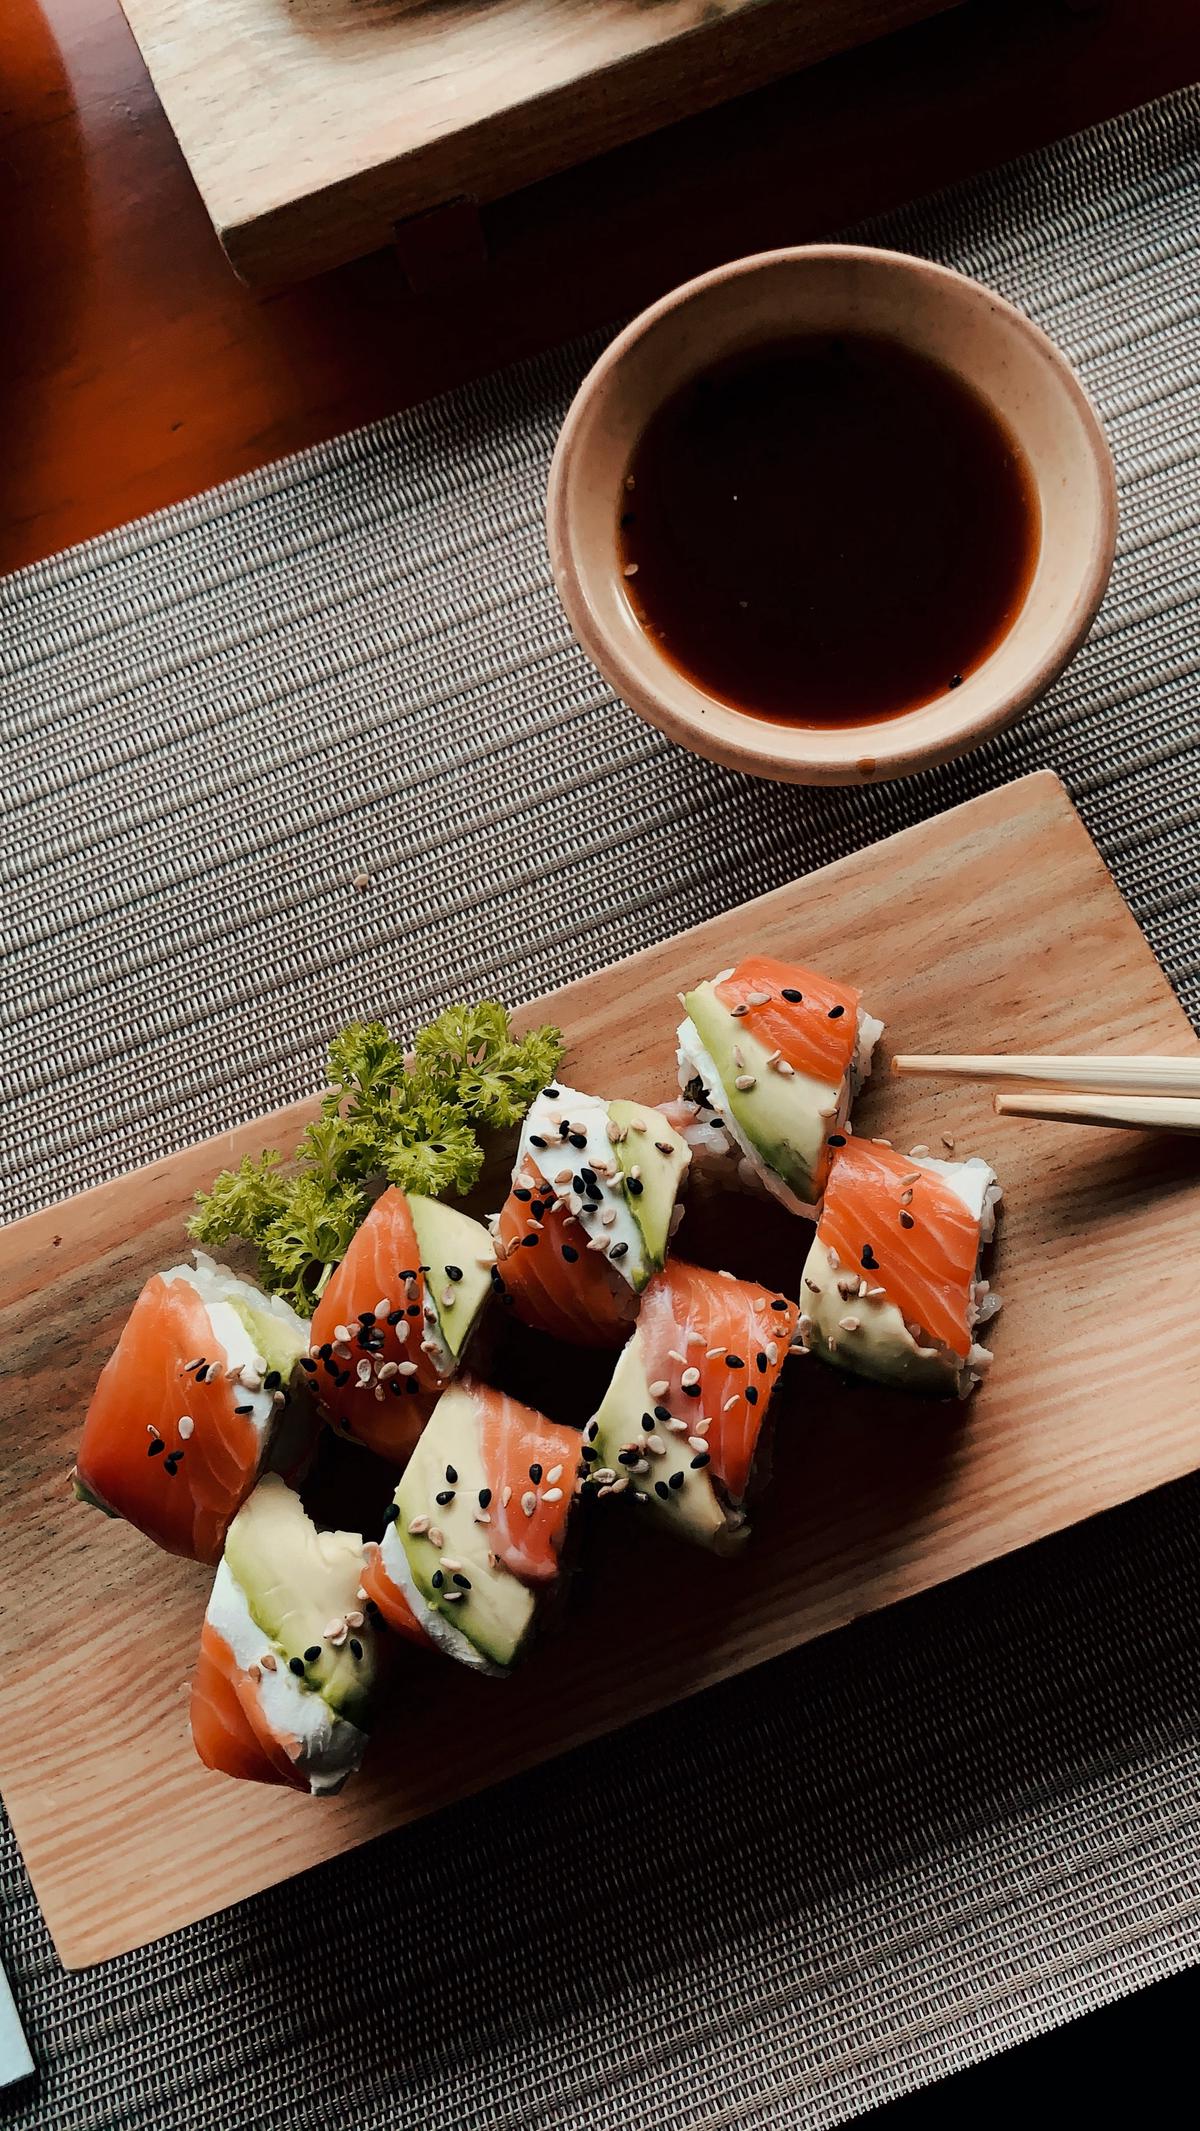 Un elegante arreglo de sushi en un plato blanco rodeado de palos de bambú